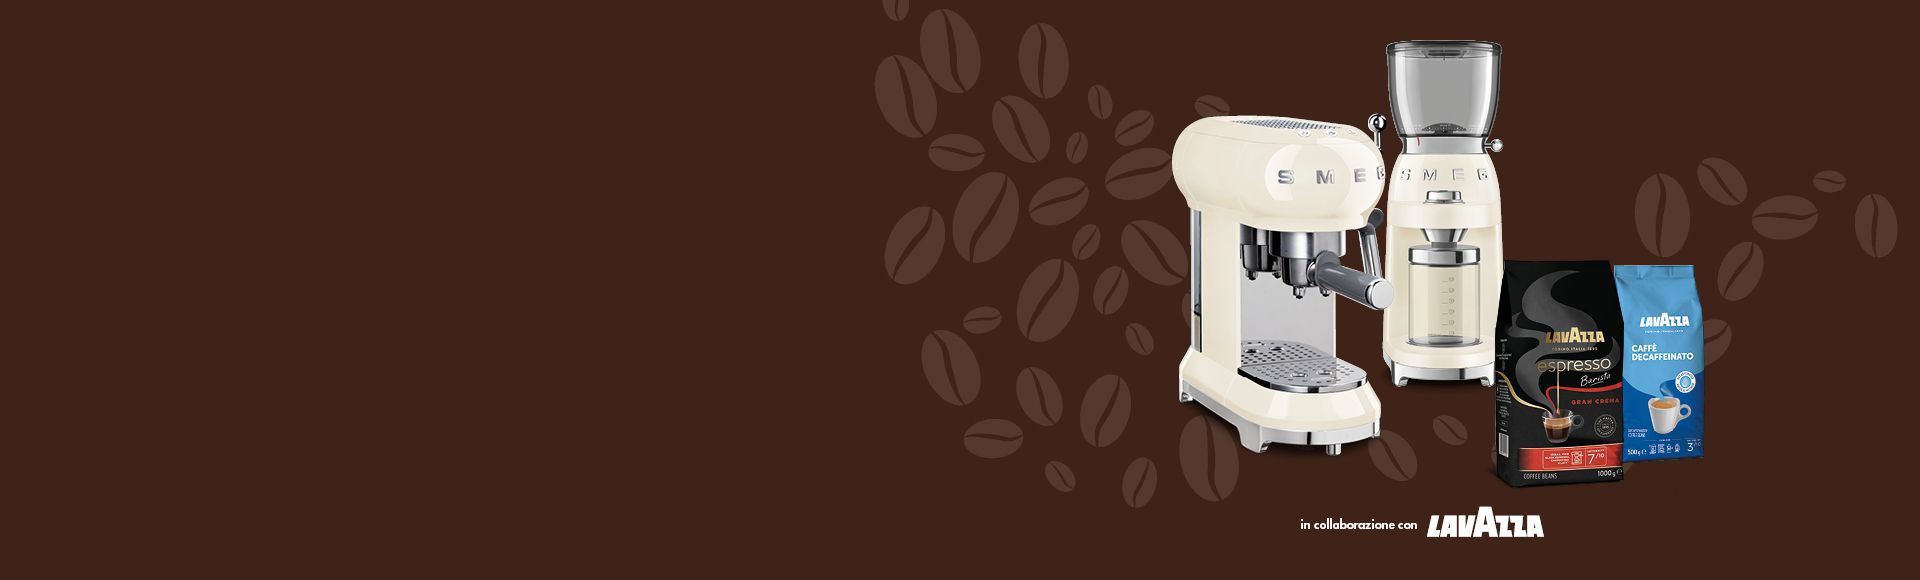 Registra il tuo acquisto per ottenere la fornitura di caffè Lavazza in regalo.